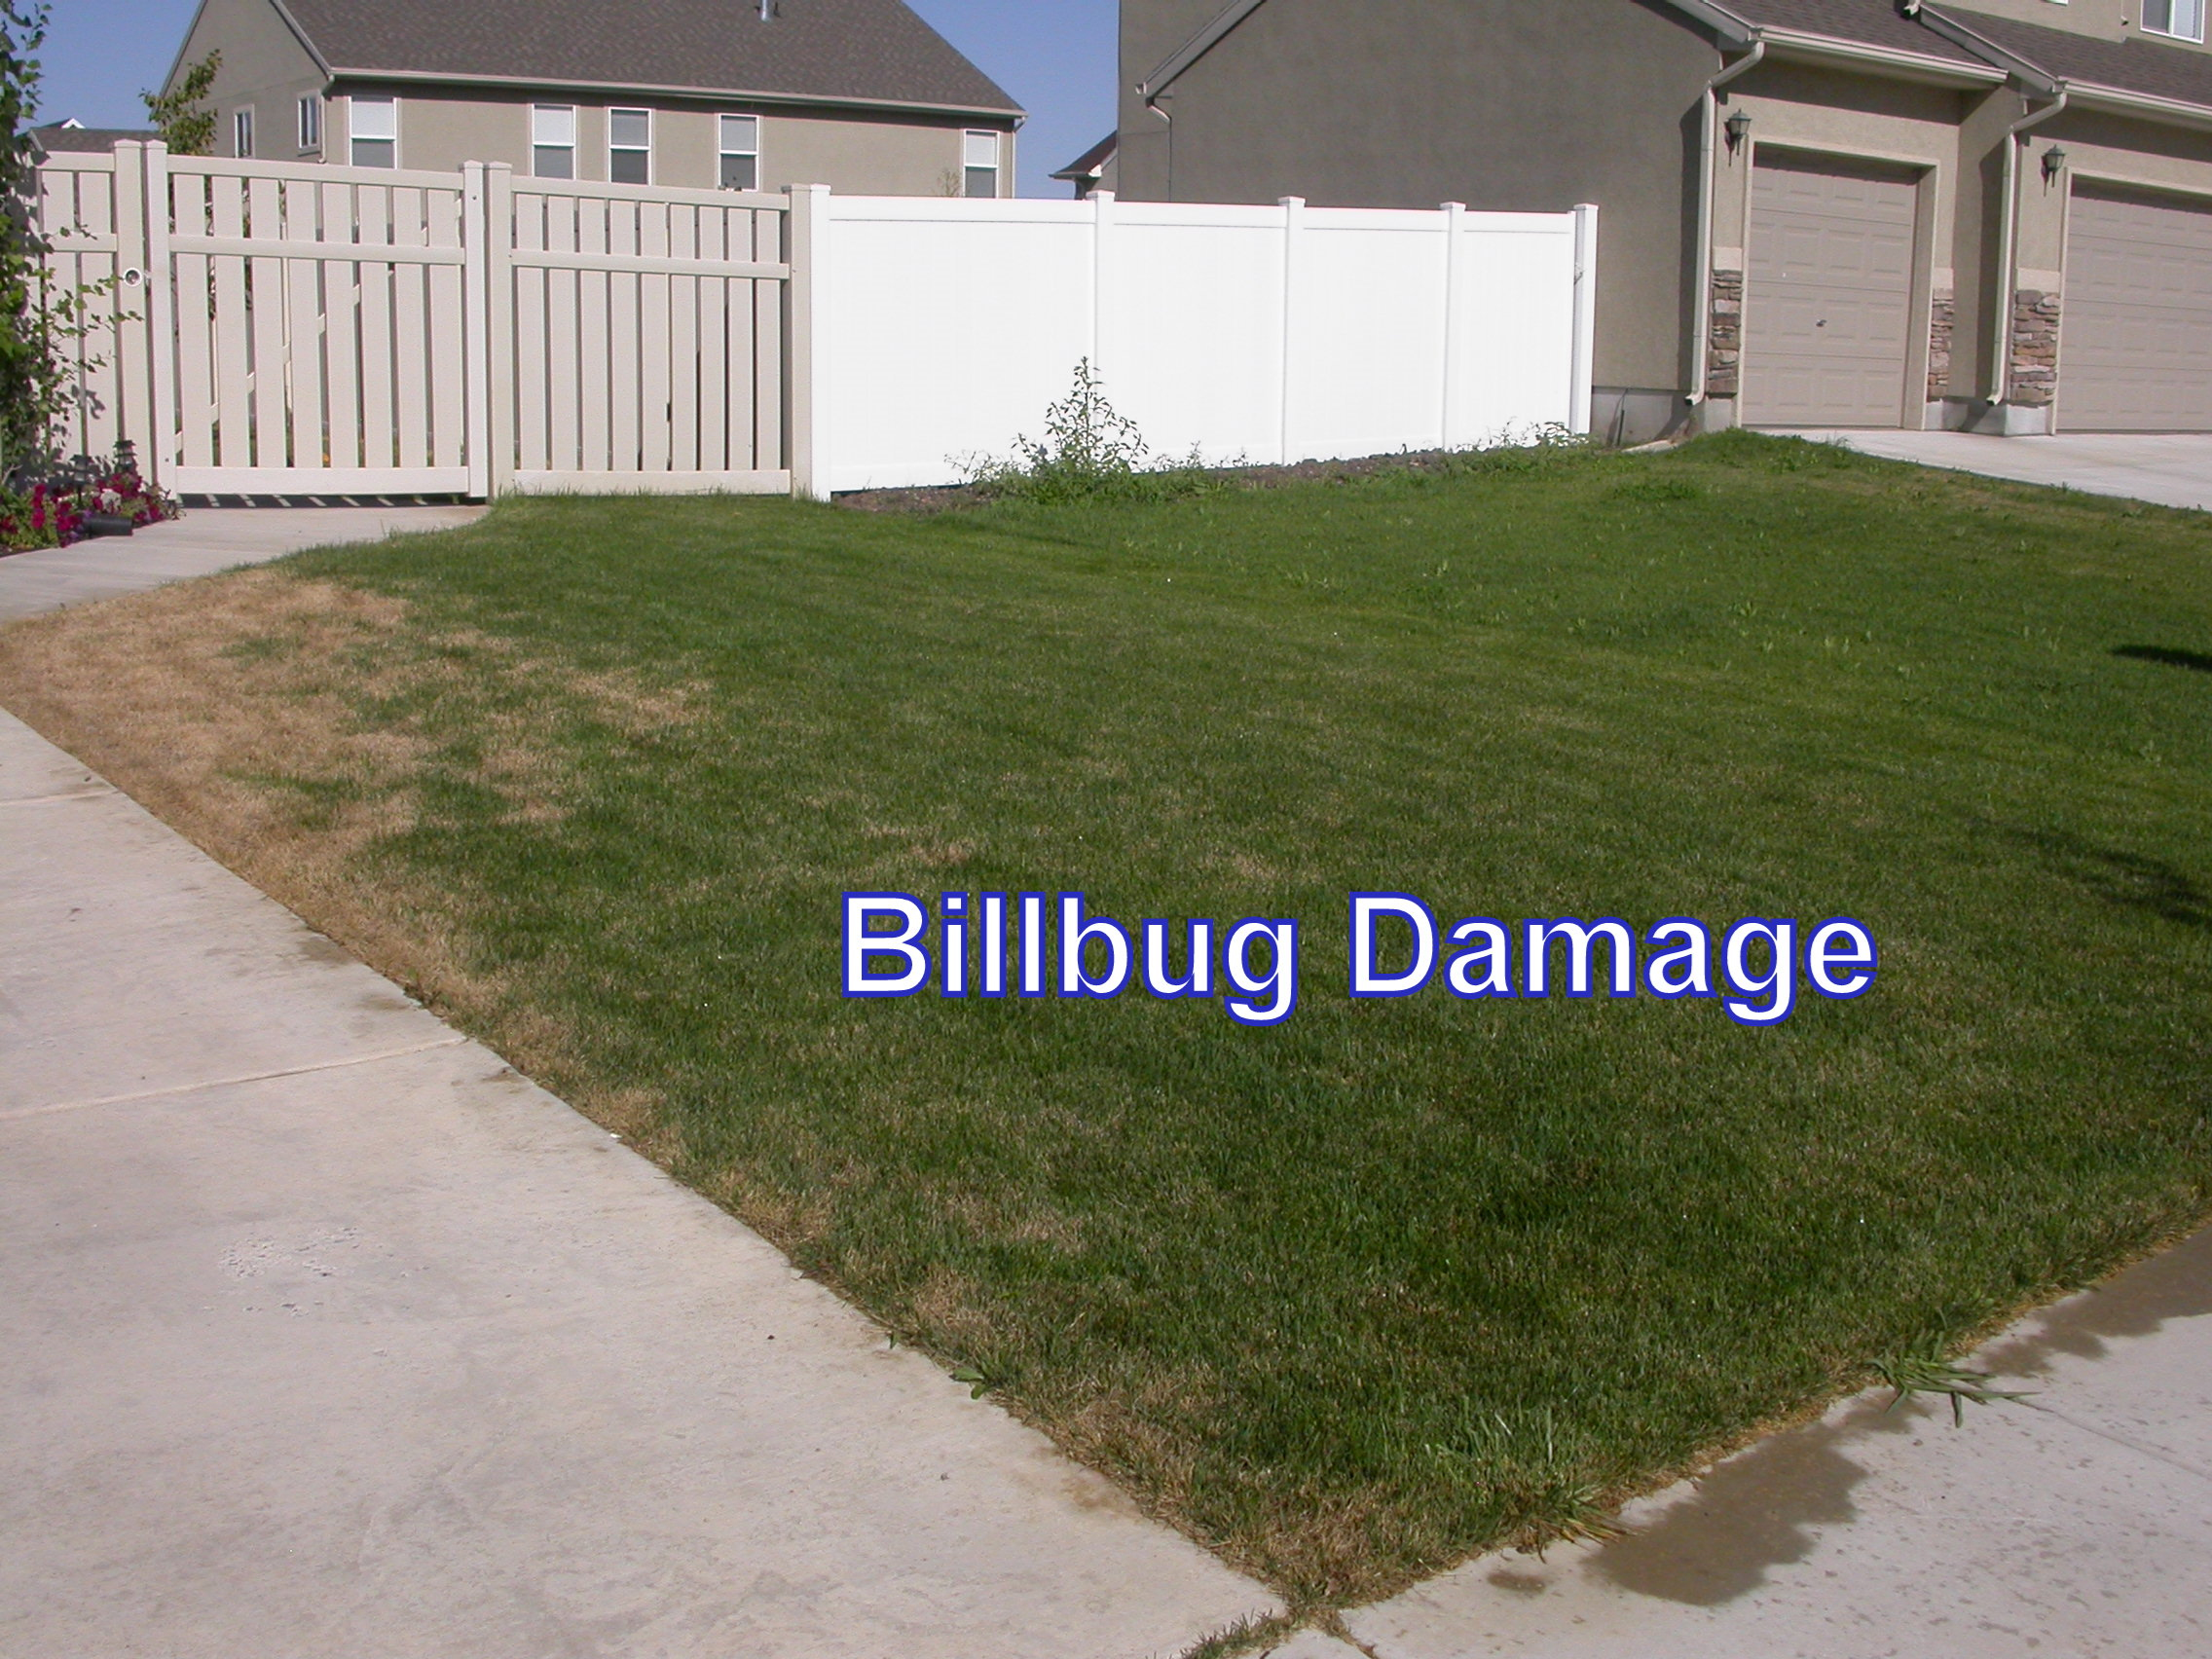 Billbug damage